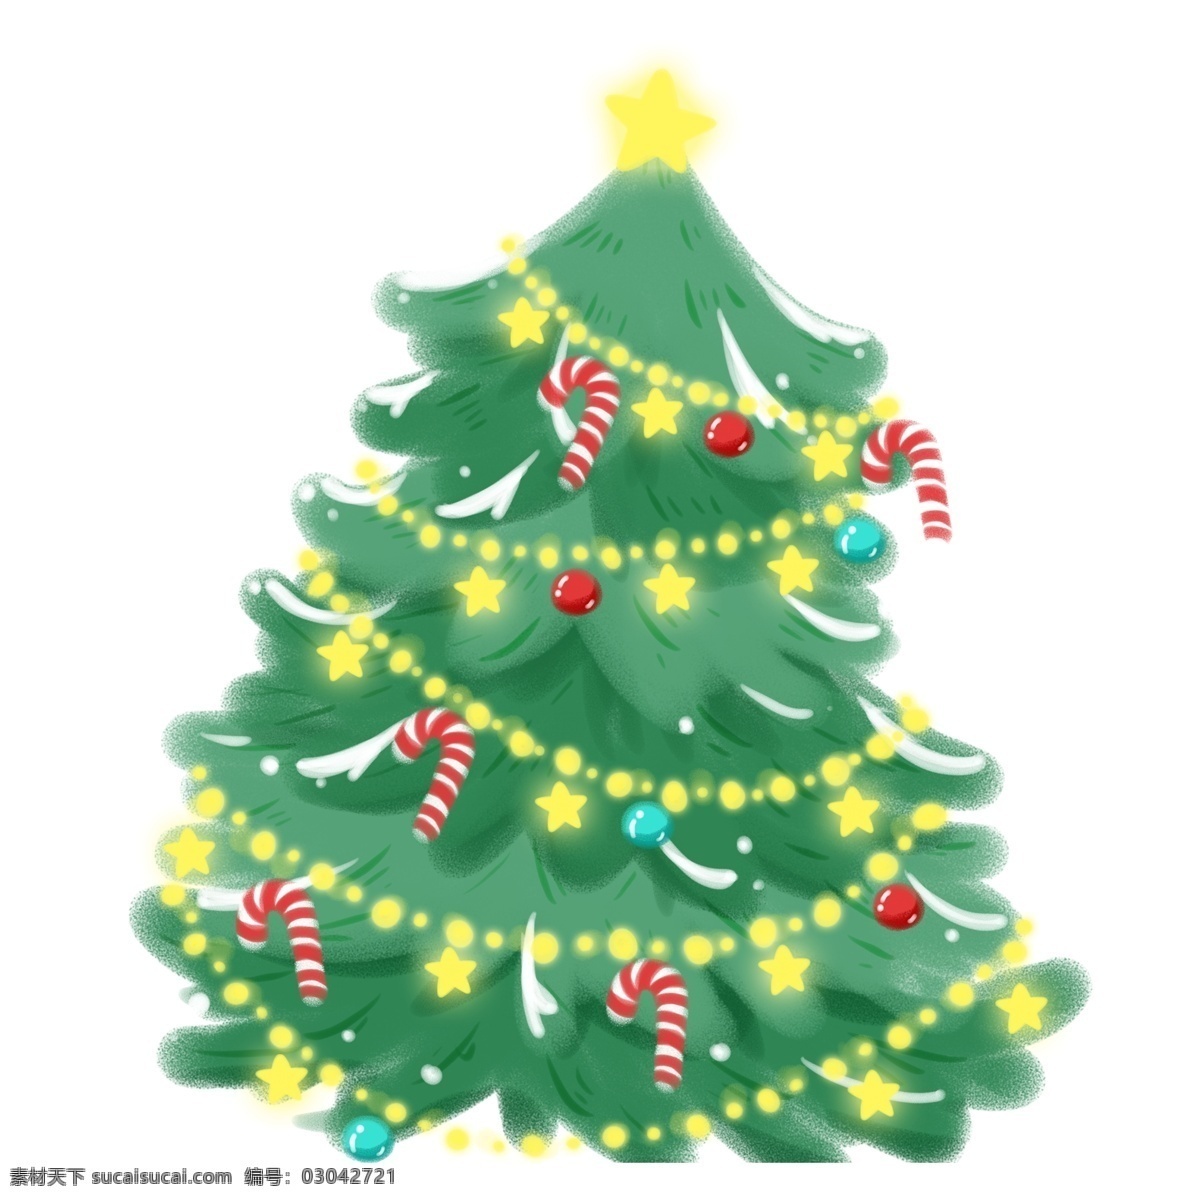 手绘 可爱 圣诞树 原创 元素 圣诞节 卡通 绿色 树木 松树 挂饰 五角星 原创元素 设计元素